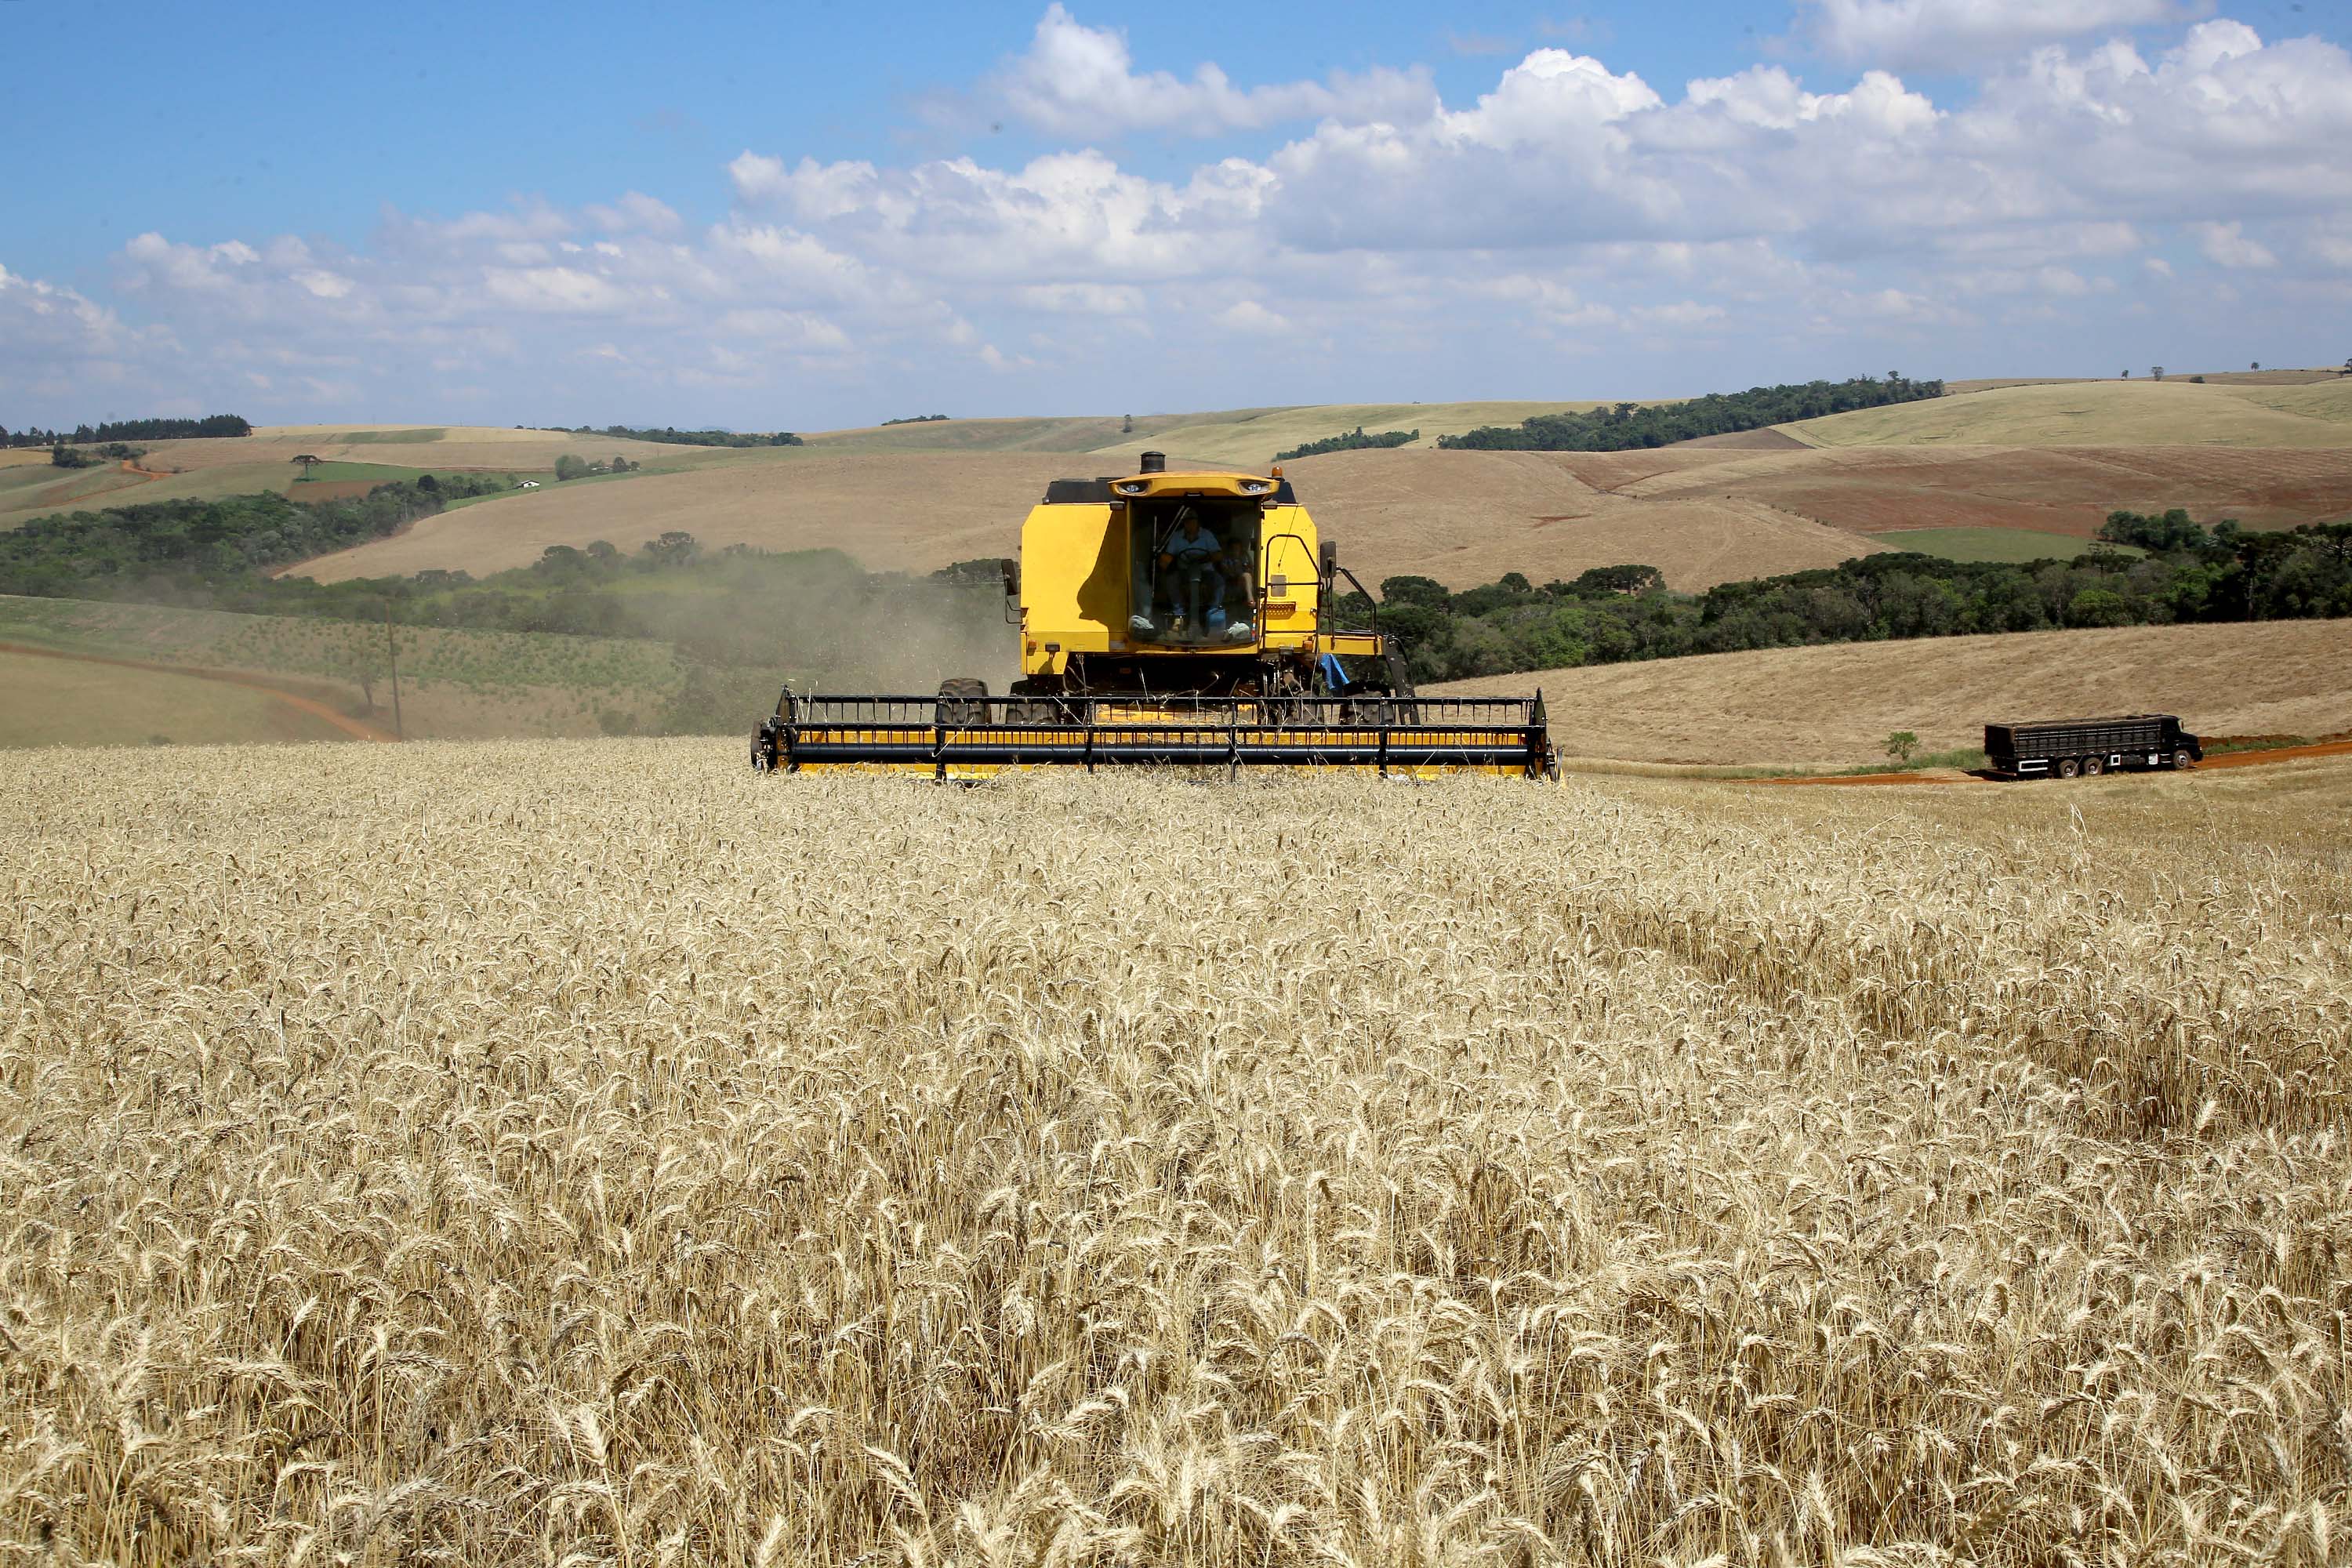 No Paraná colheita do trigo avança pouco com chuvas intermitentes em todo Estado